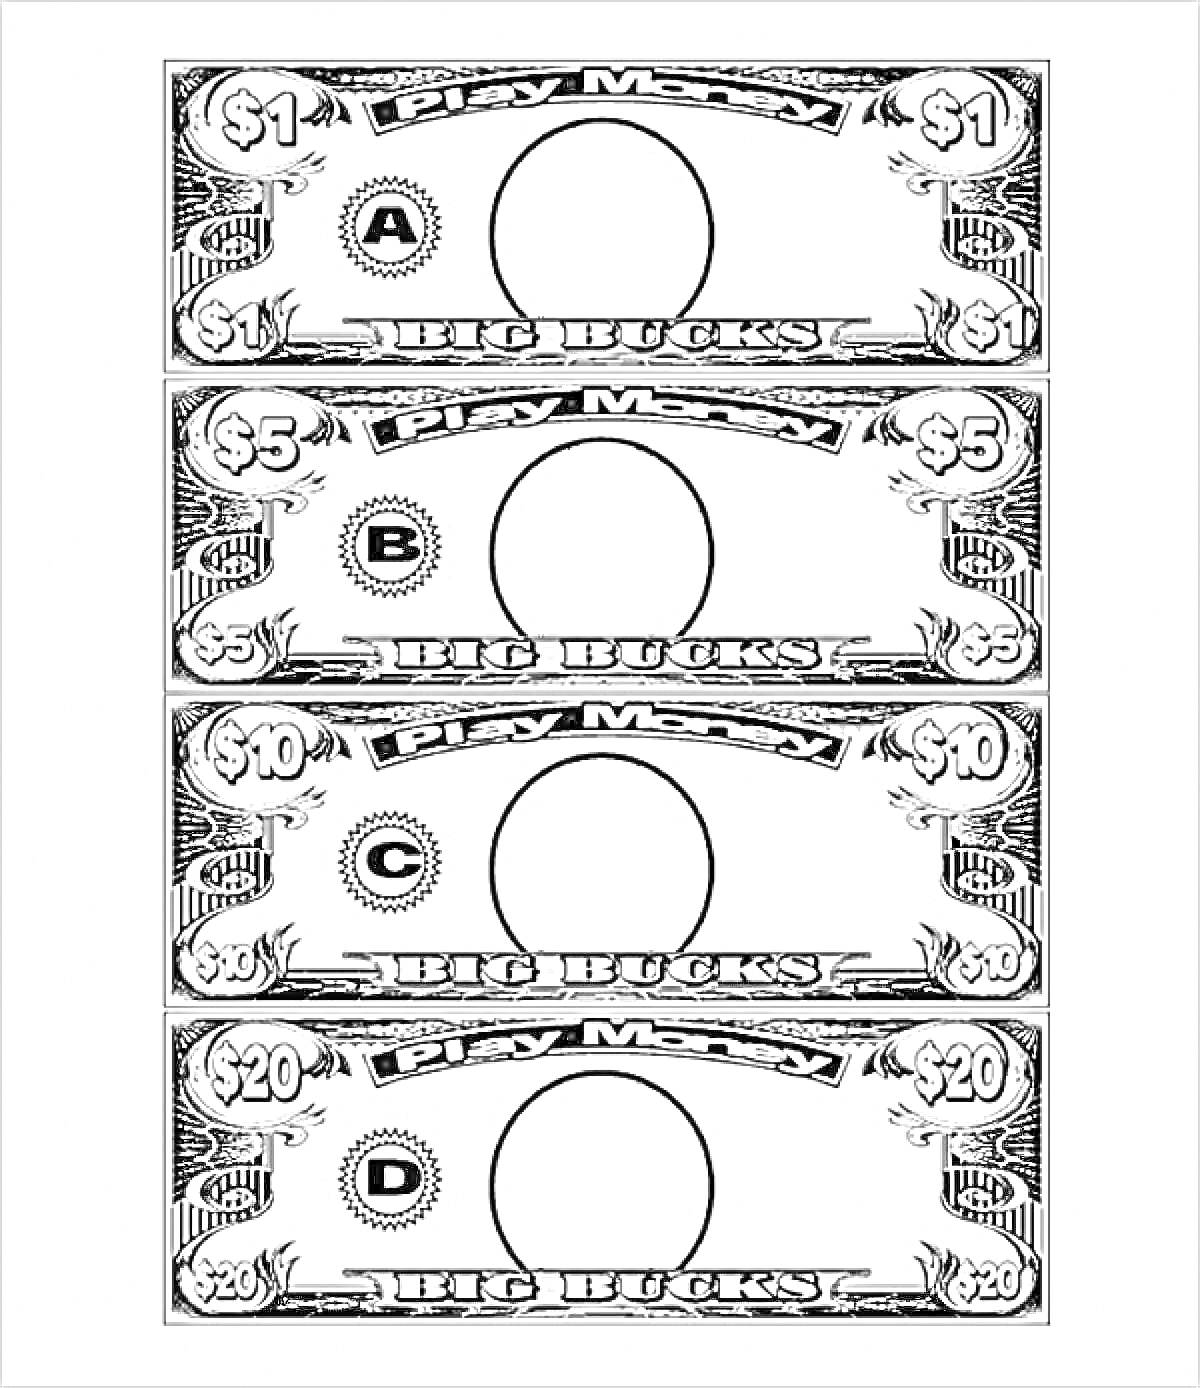 Раскраска Детские игровые деньги с номиналом $1, $5, $10 и $20, с буквами A, B, C и D в центральных кругах для добавления портрета.